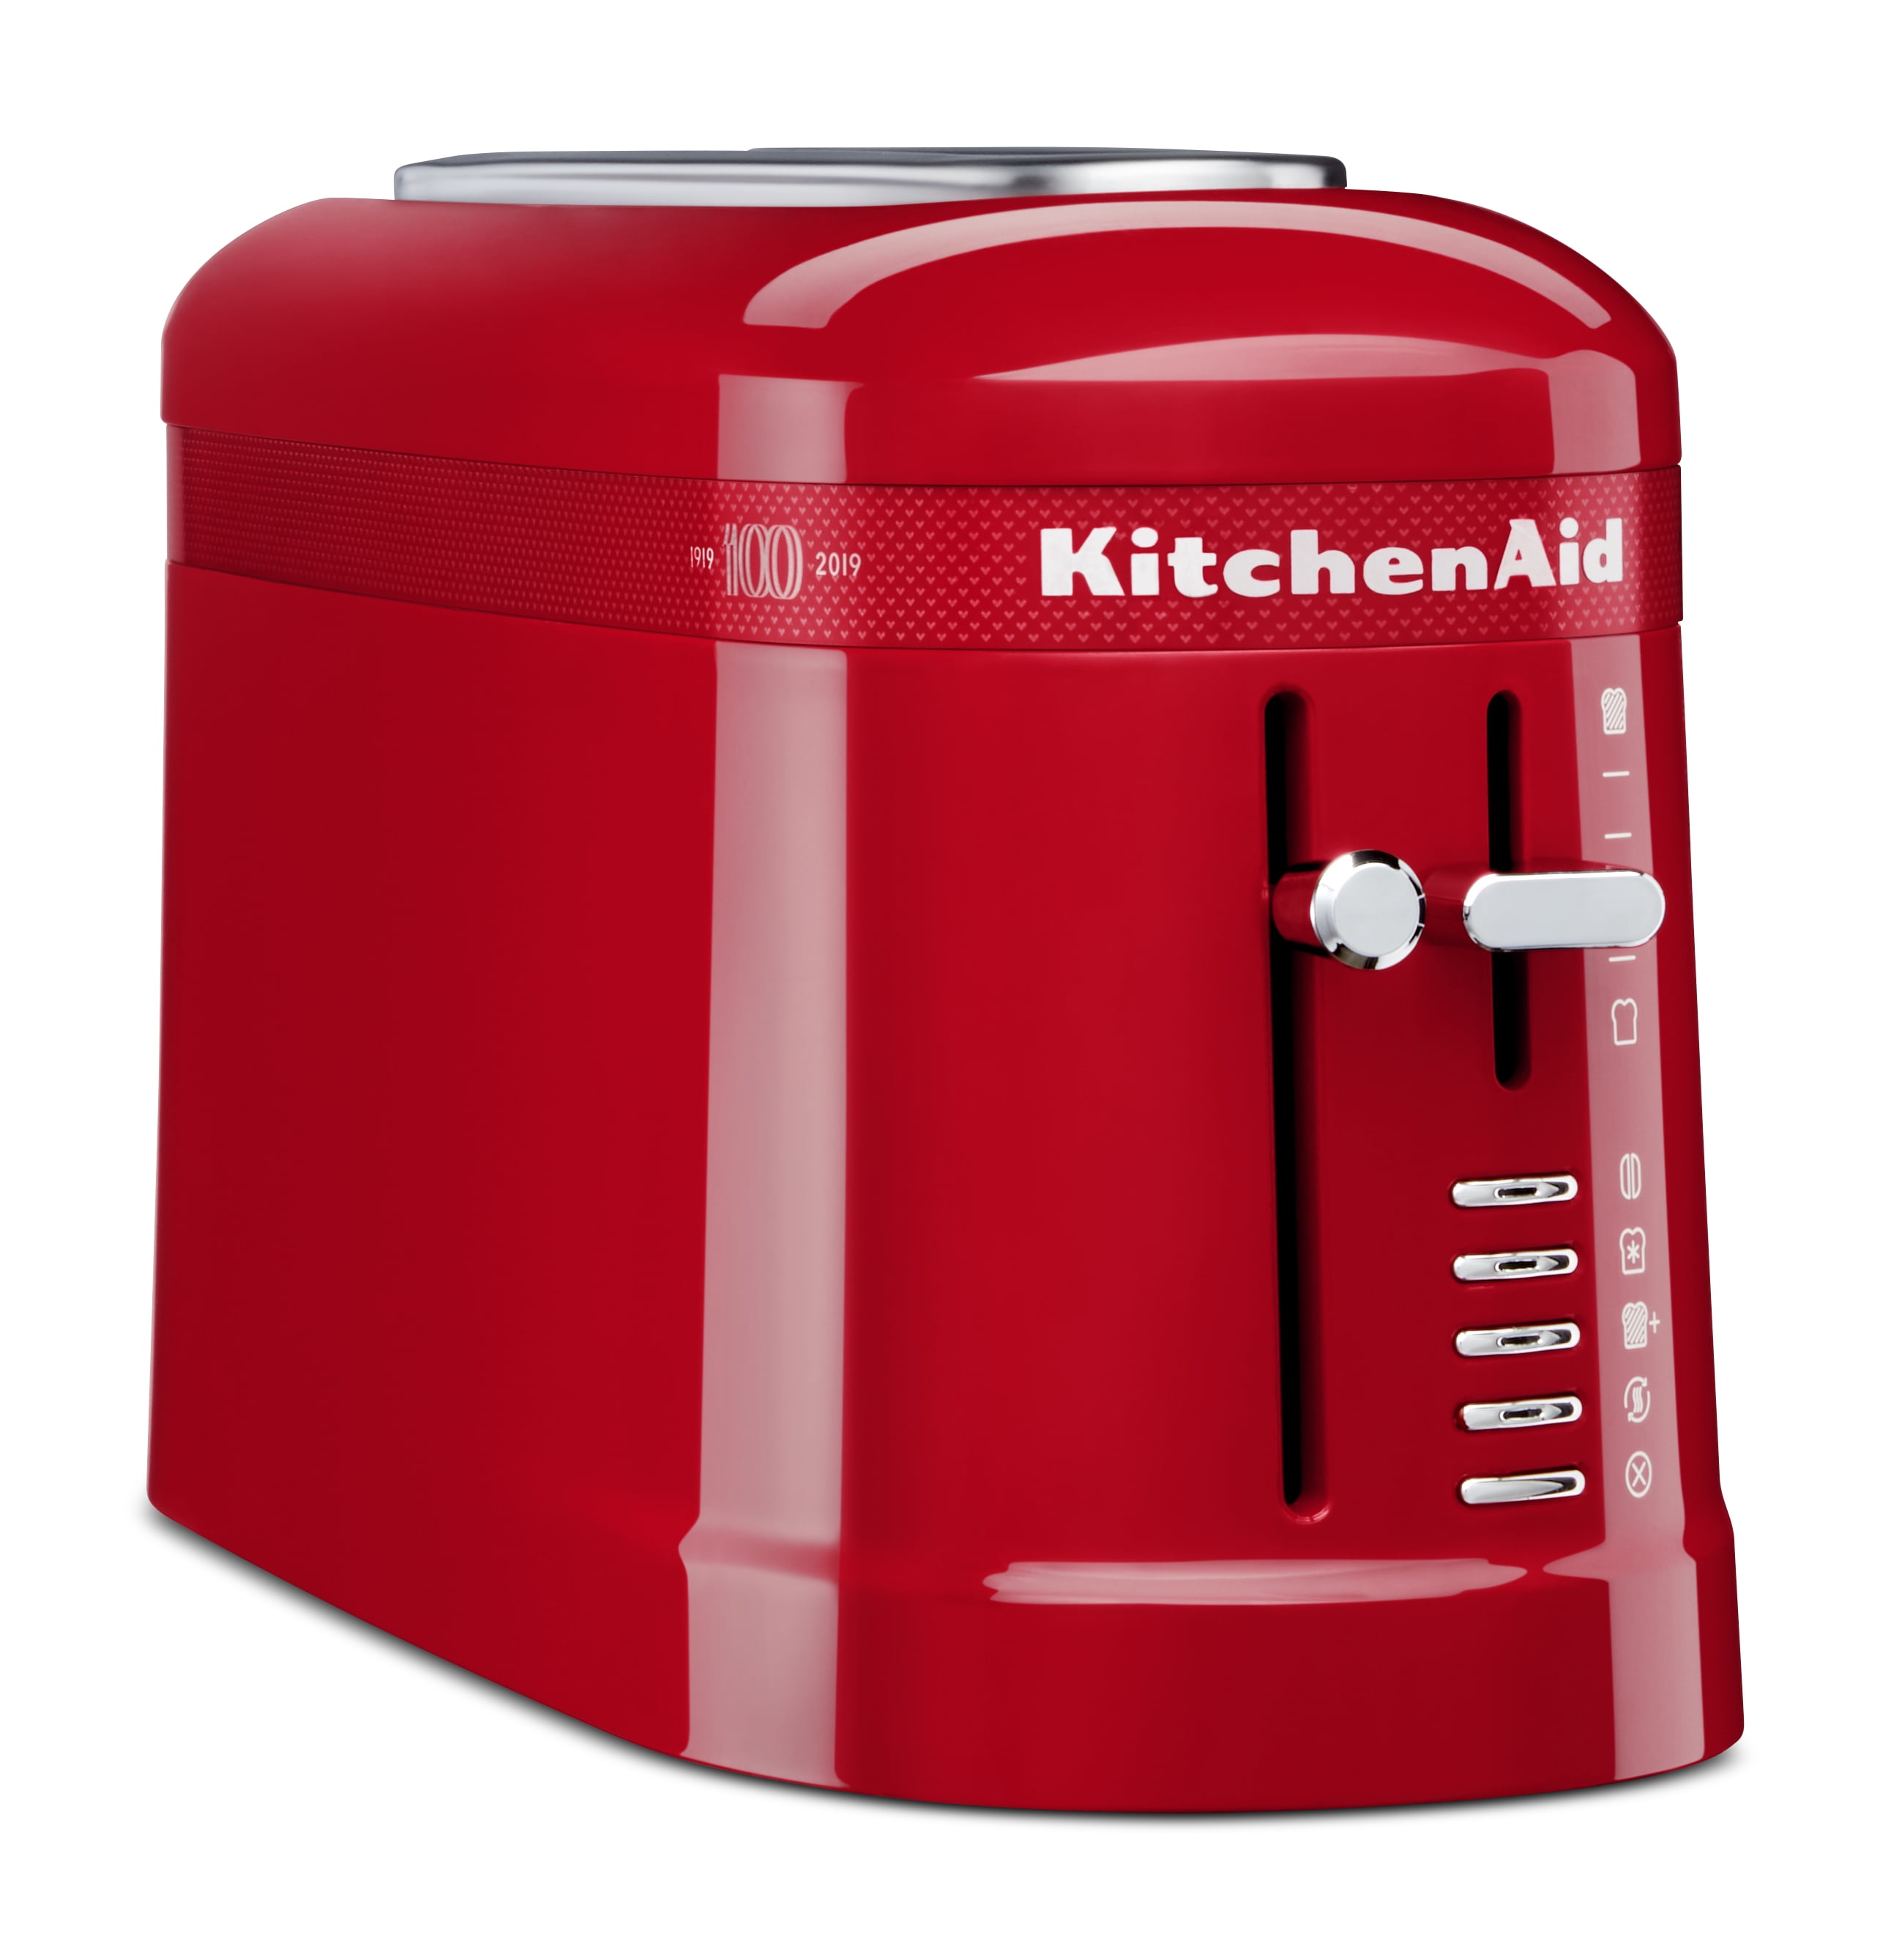 KitchenAid Artisan toaster review: hulking mega-toaster deserves a toast